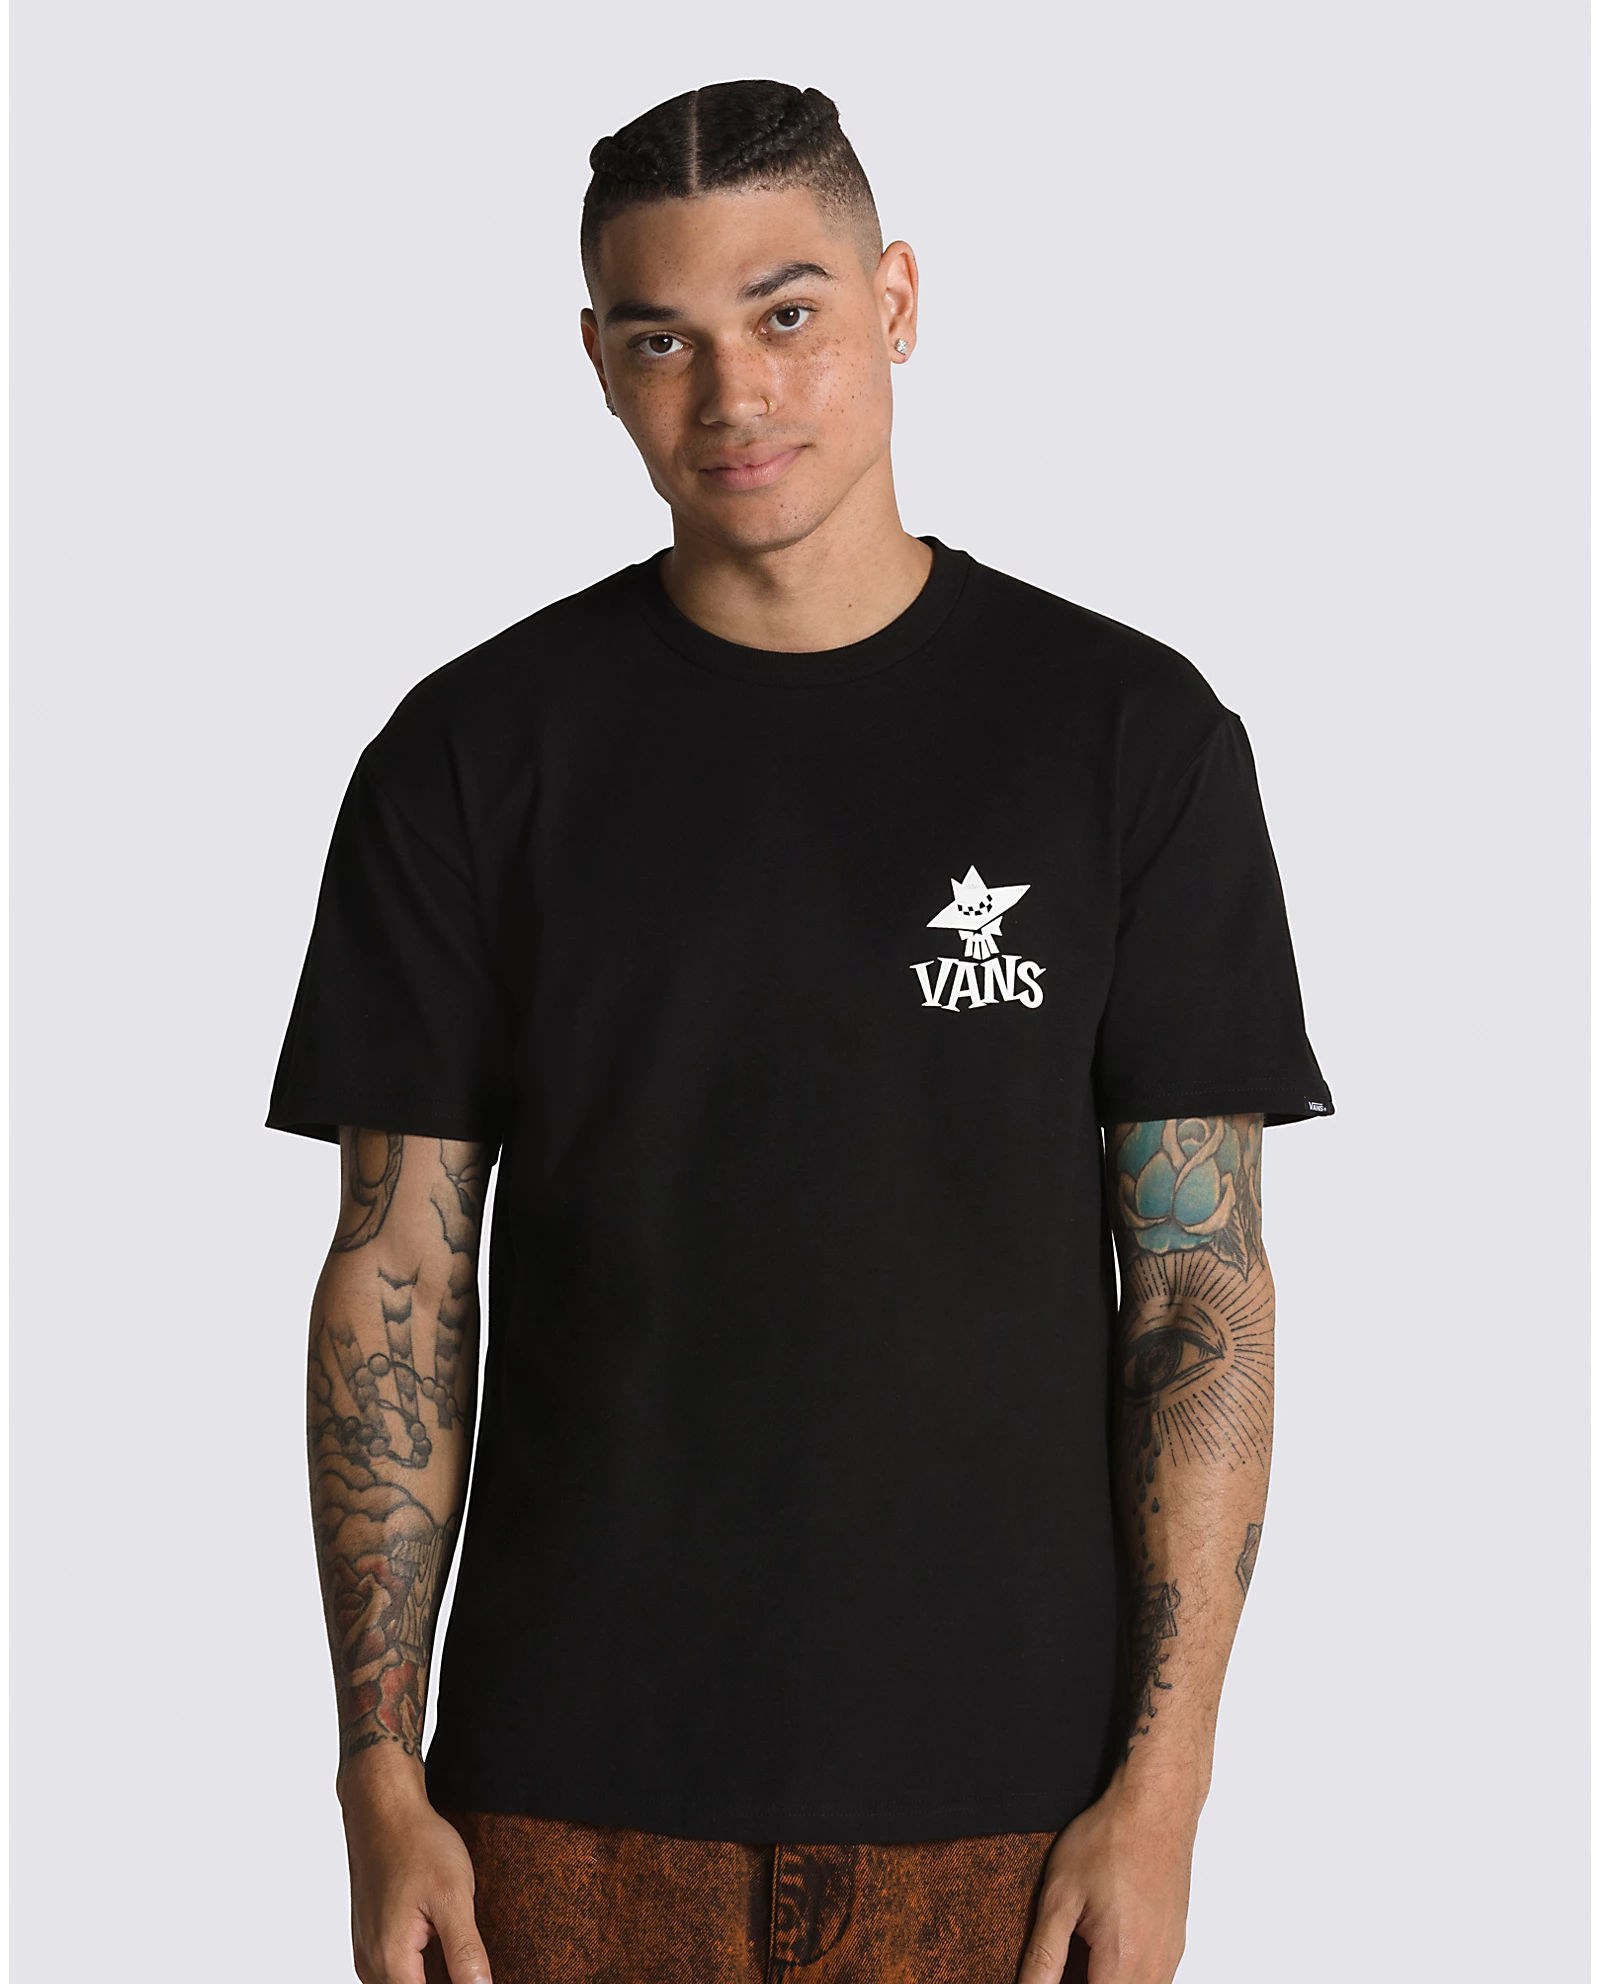 Vans Sketchy Friend T-Shirt Black VN0006DKBLK